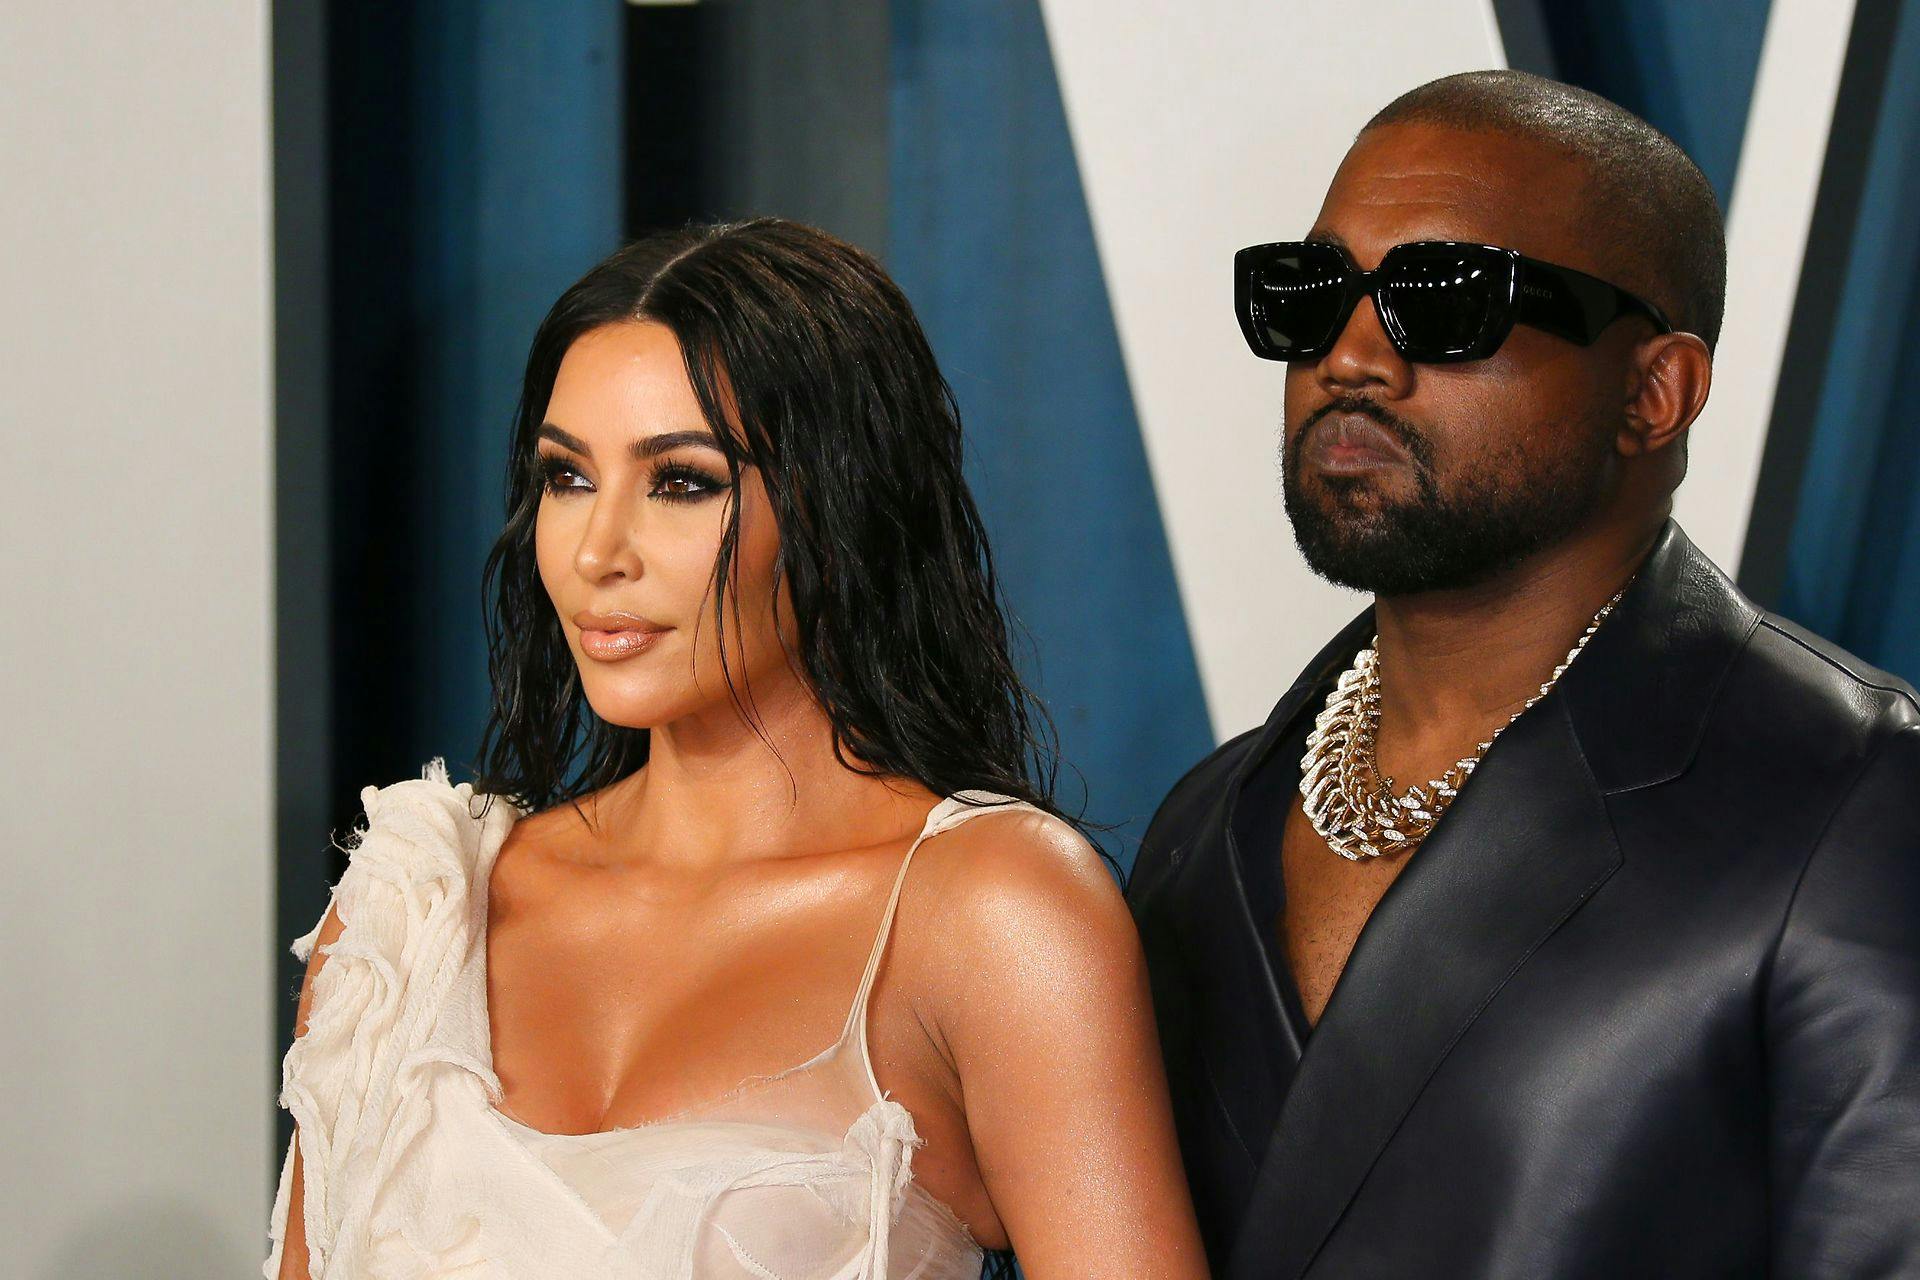 Der er iskold stemning mellem det forhenværende ægtepar, Kim Kardashian og Kanye West.